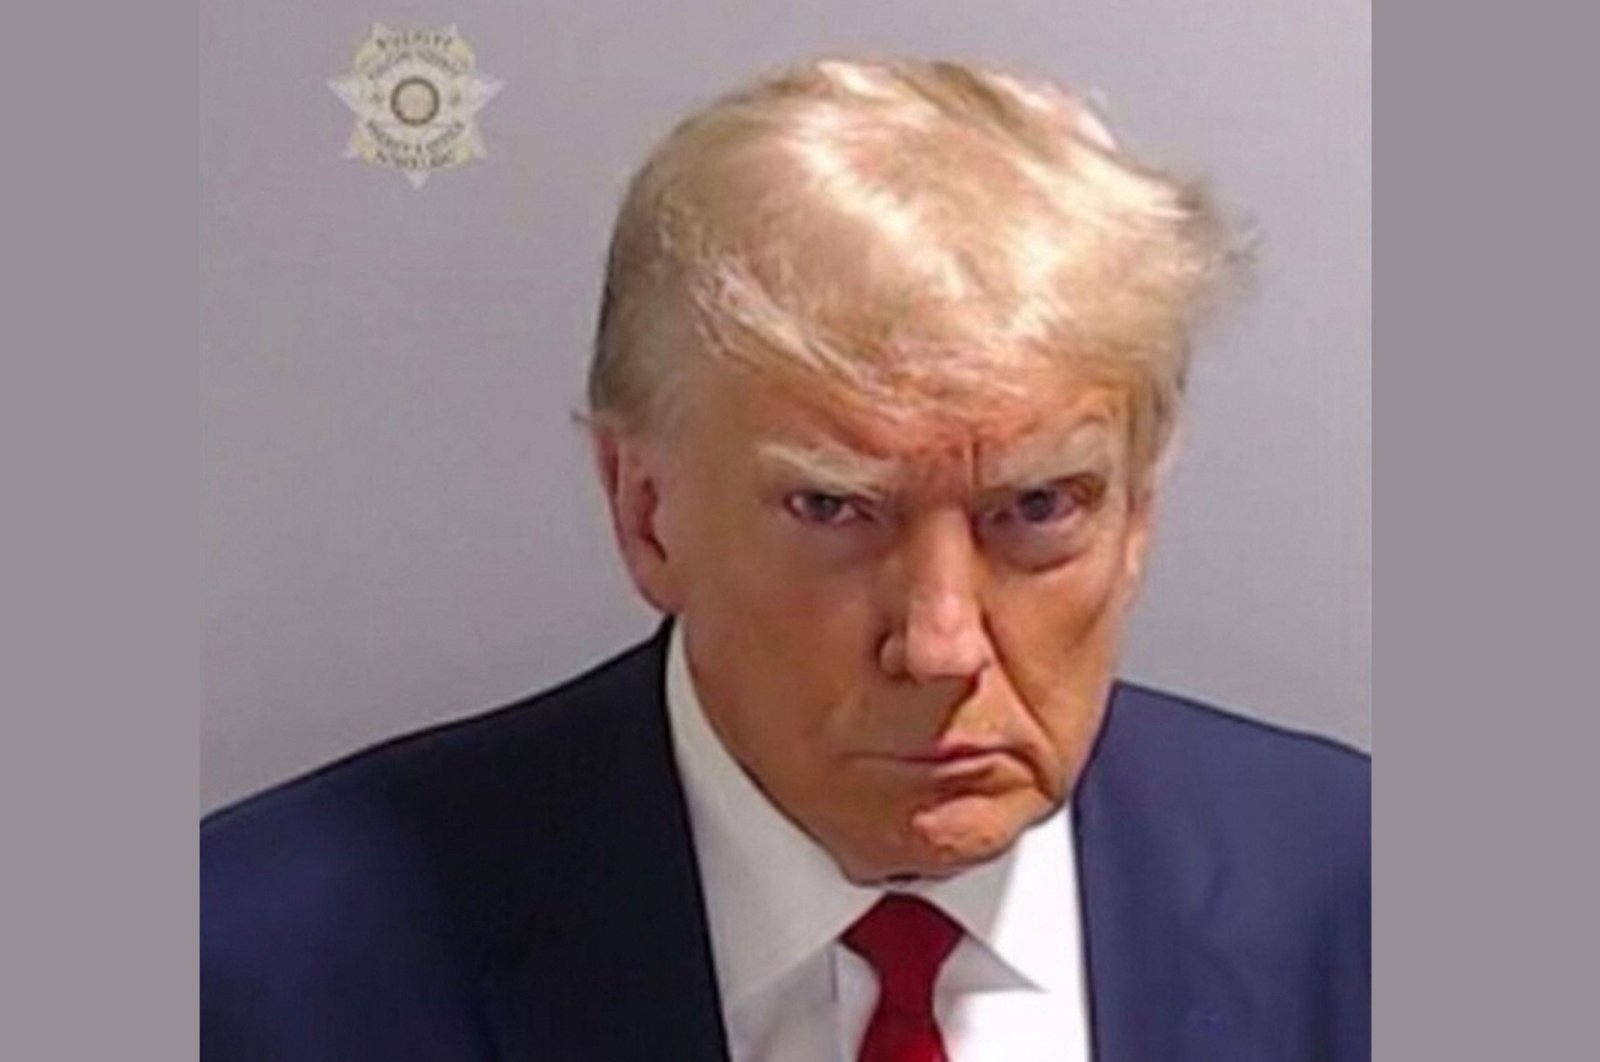 Trump’s historic mug shot released after election case arrest